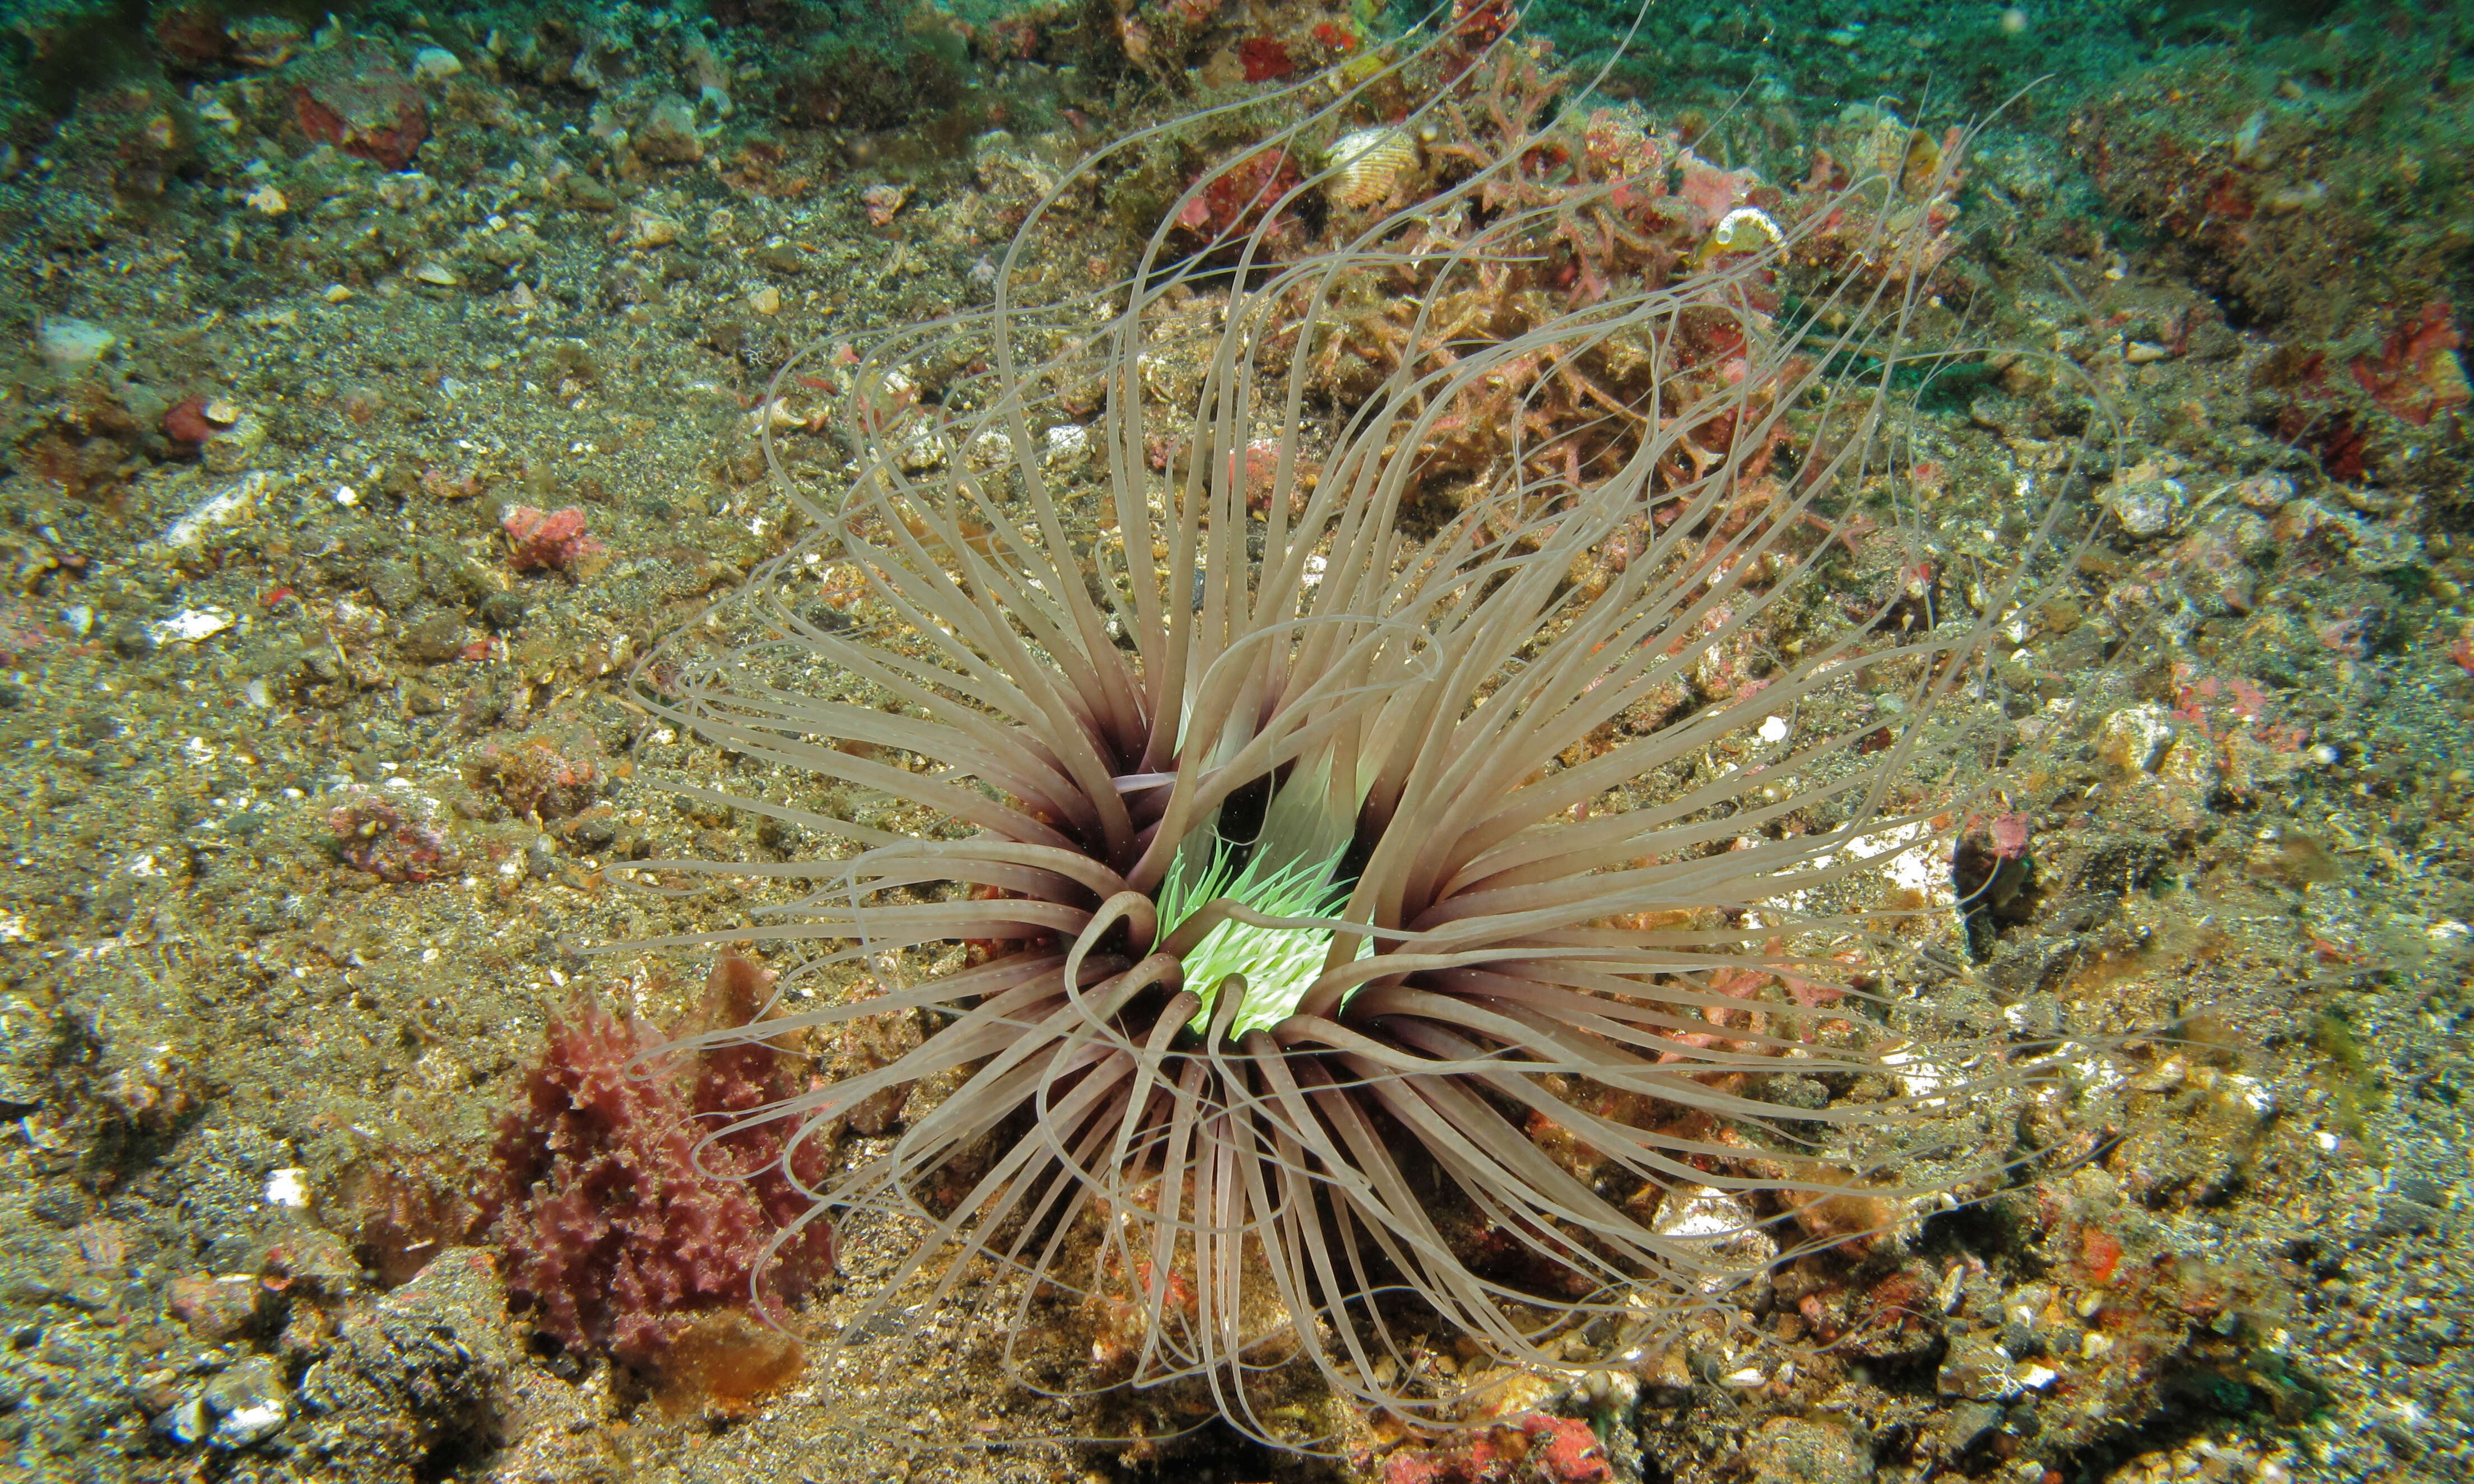 Image of Large tube anemone